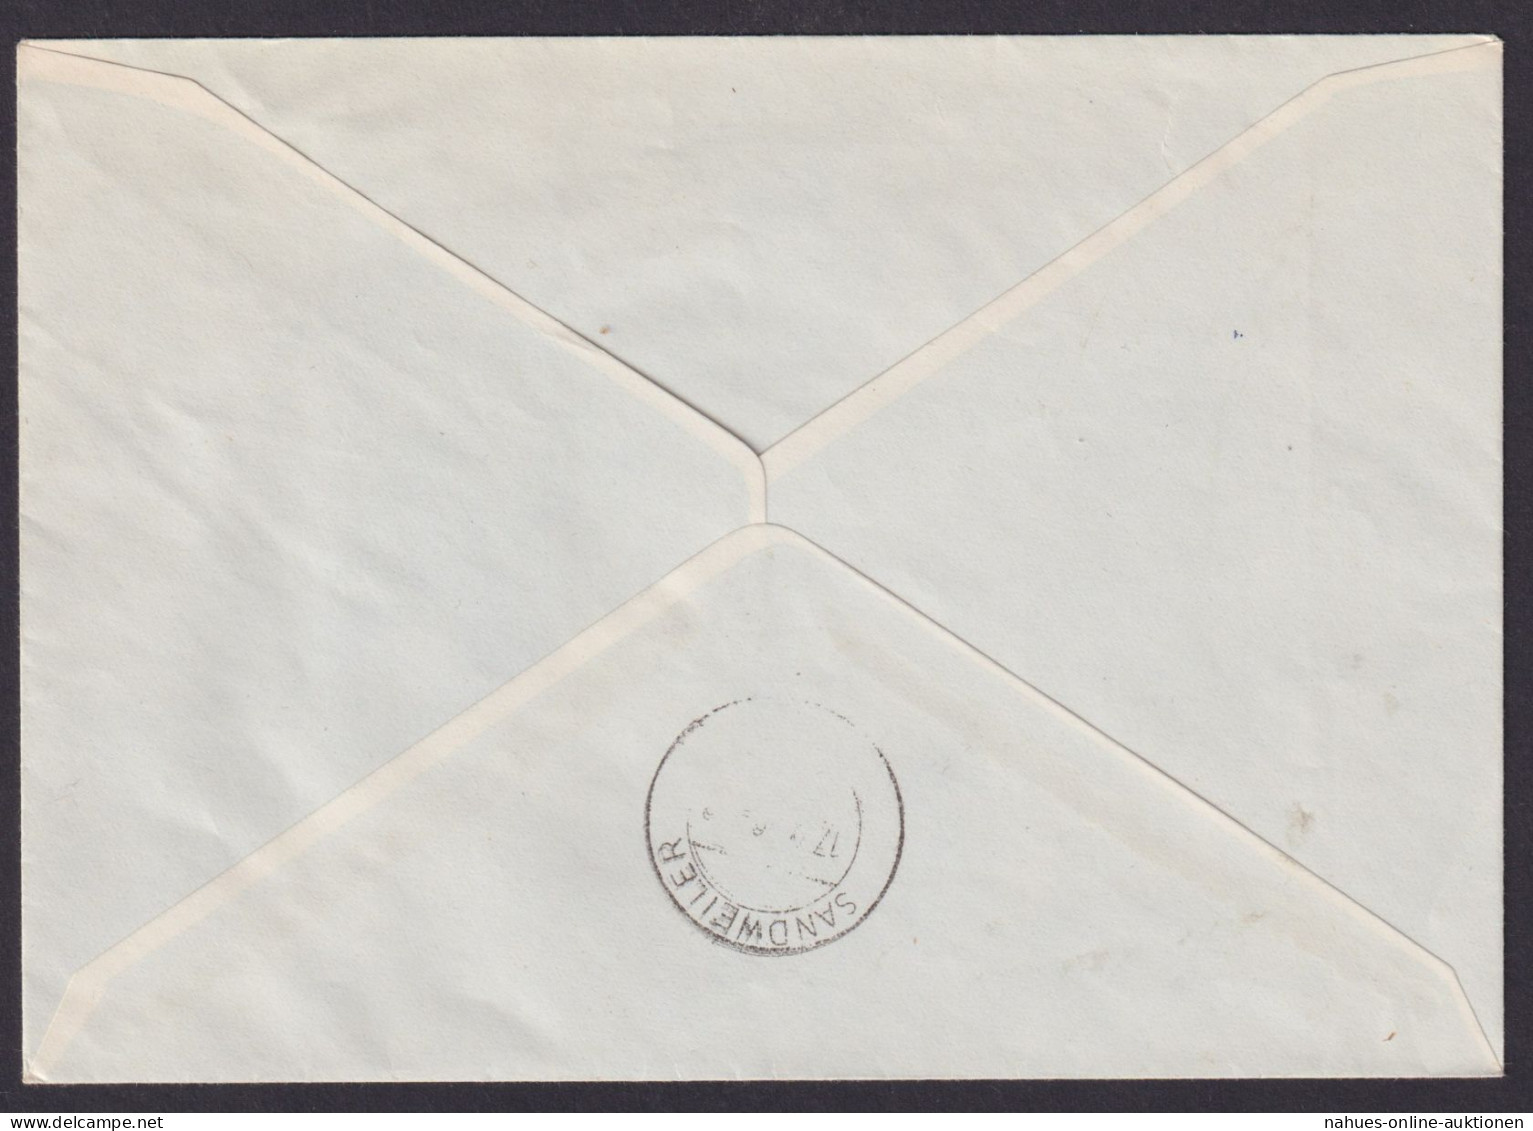 Luxemburg R Brief 555-557 Europa Ausgabe 1956 Als Echt Gelaufener FDC Kat 120,00 - Brieven En Documenten